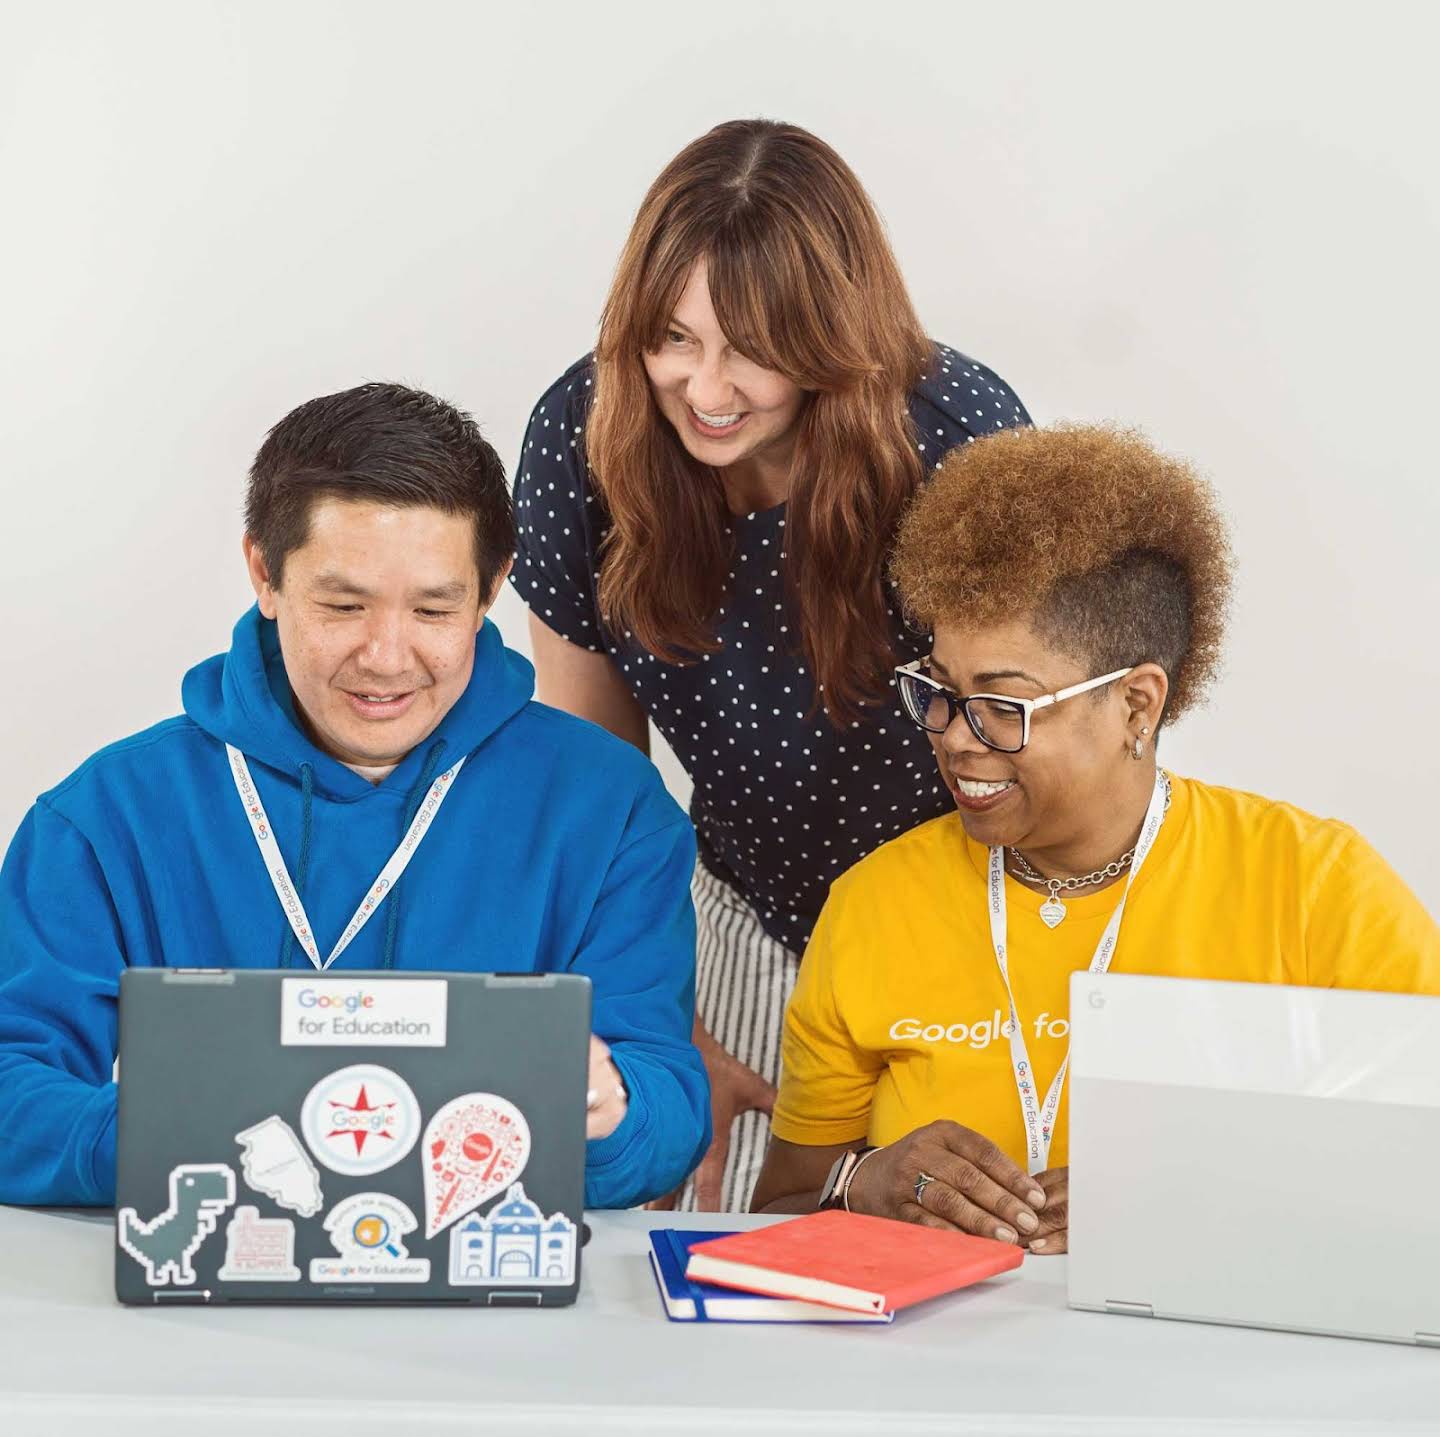 Chromebook を使って共同作業をしている 3 人の教育者の画像